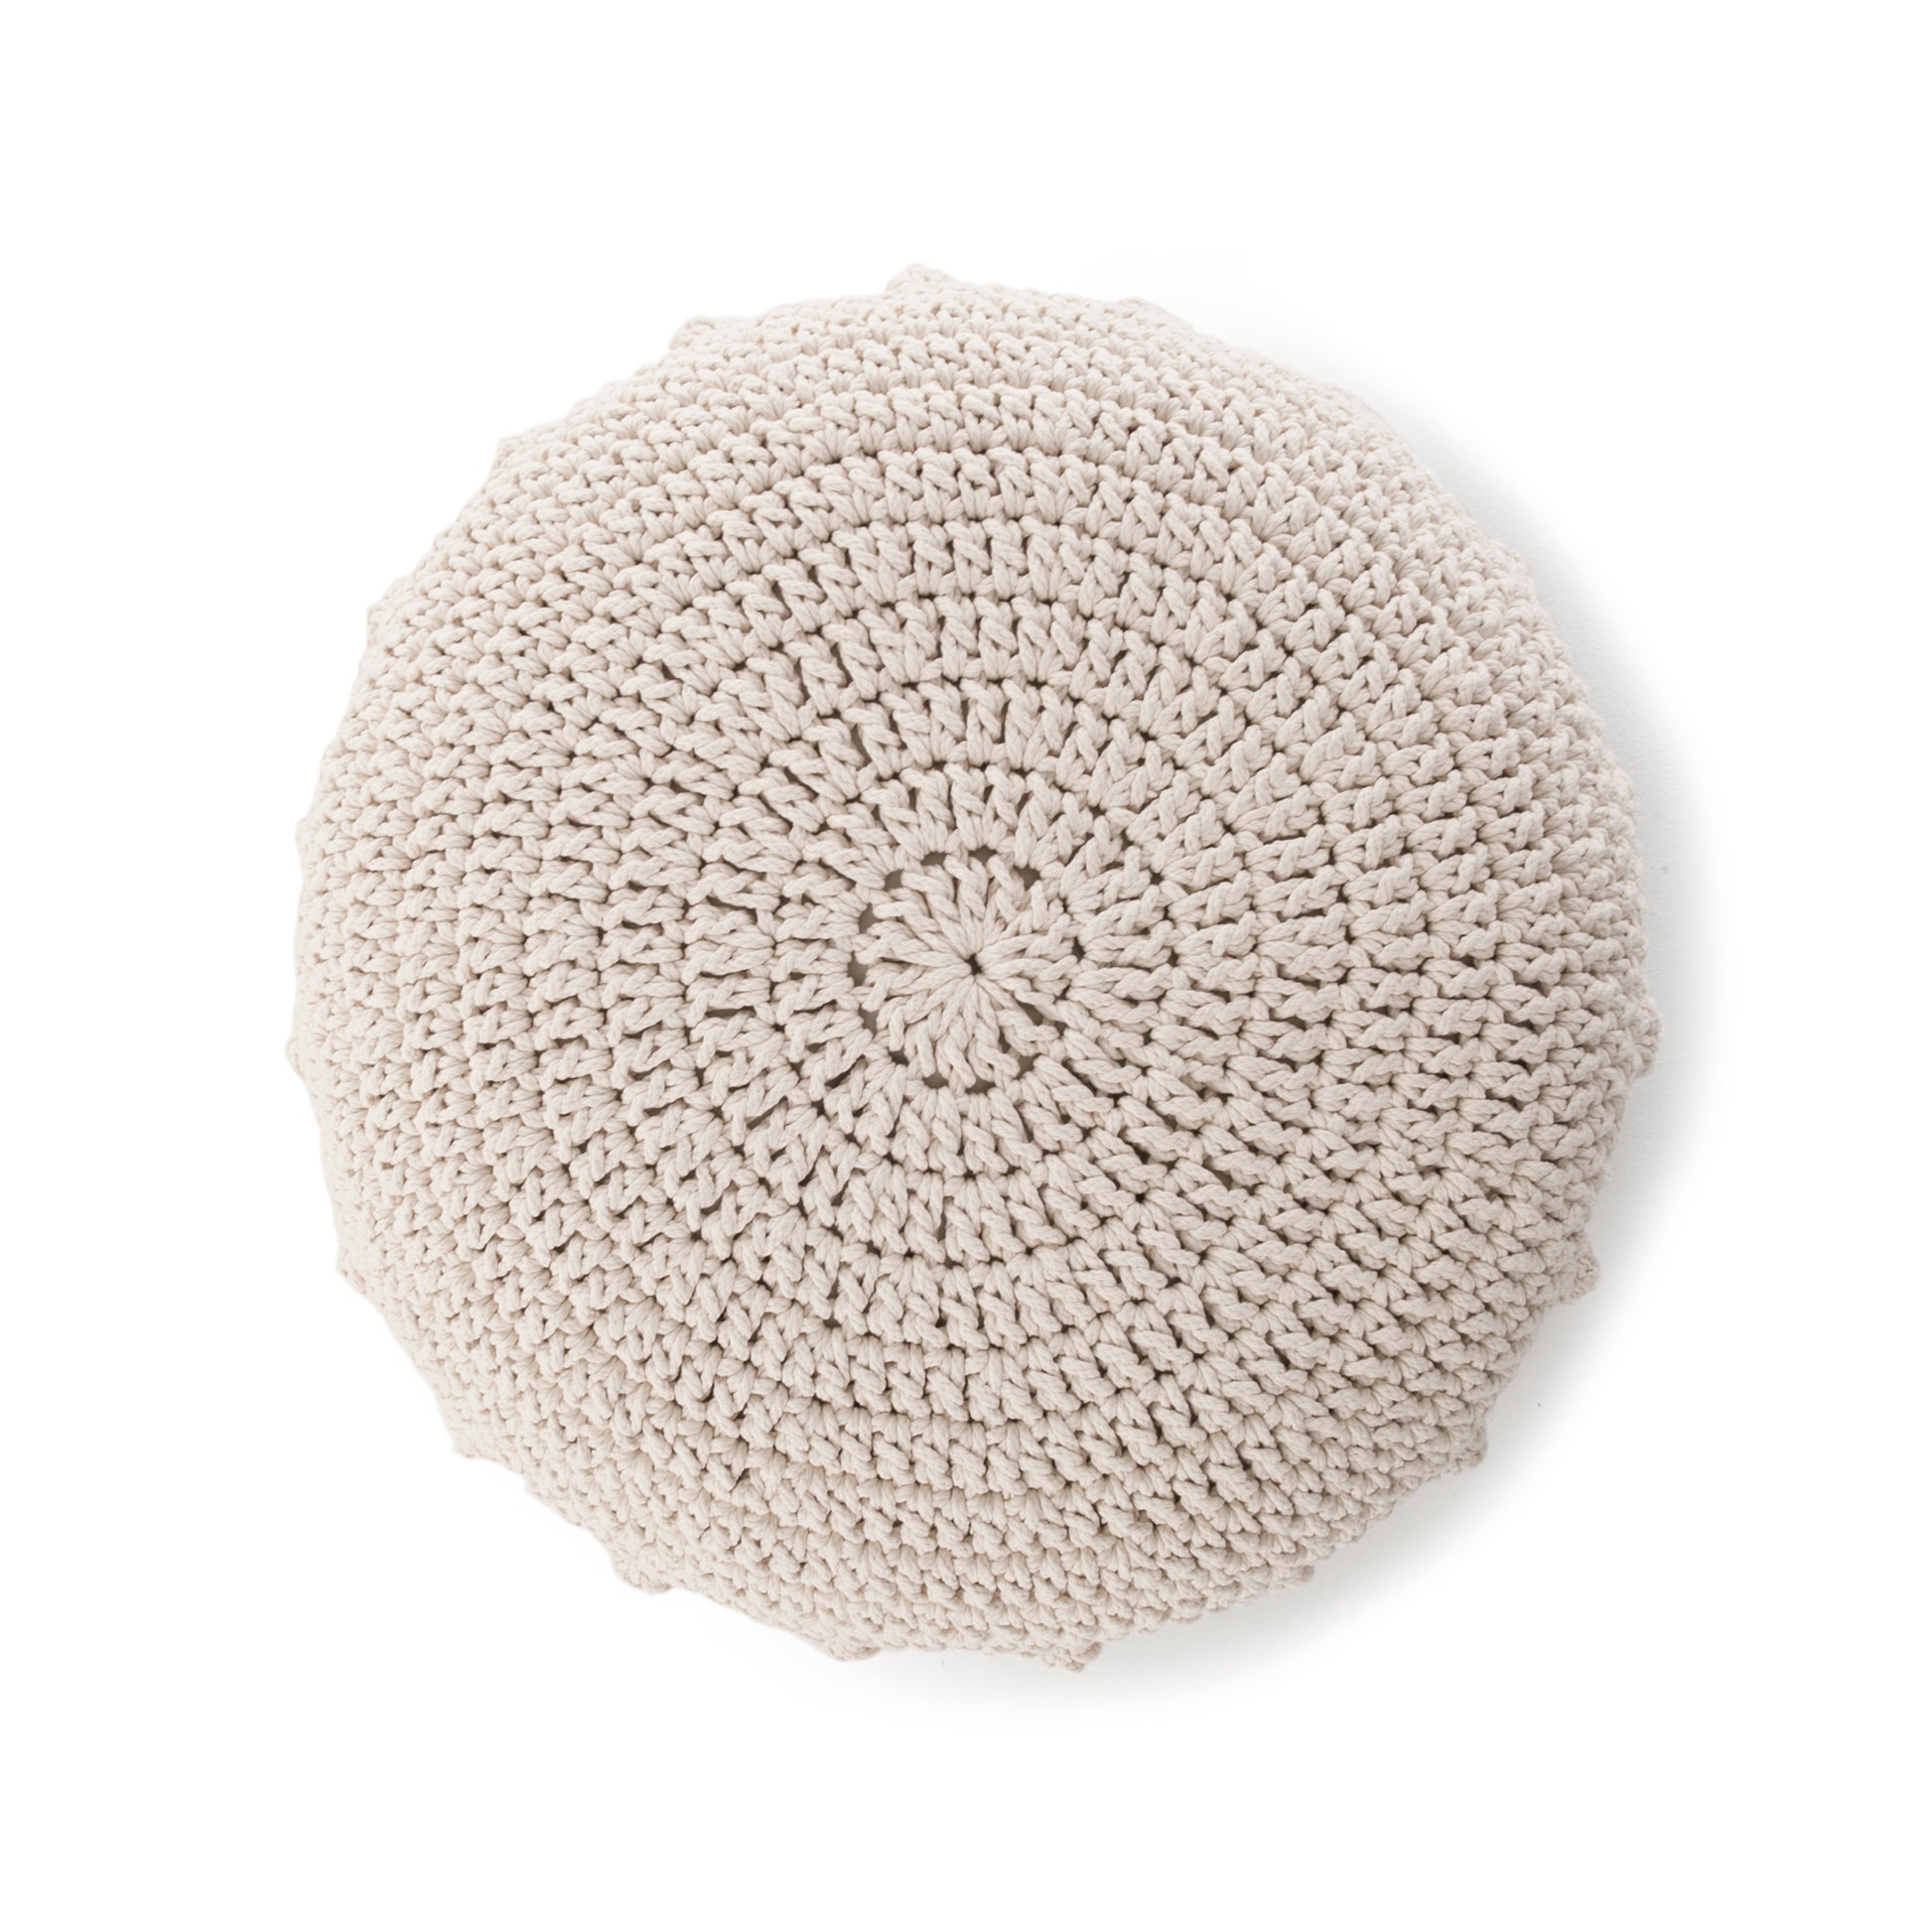 Puff Disco em crochê Cru, com fio 100% algodão.  Fechamento com zíper, possibilitando a remoção da capa para lavagem.  Dimensões: Altura - 20cm; Diâmetro - 85cm. 